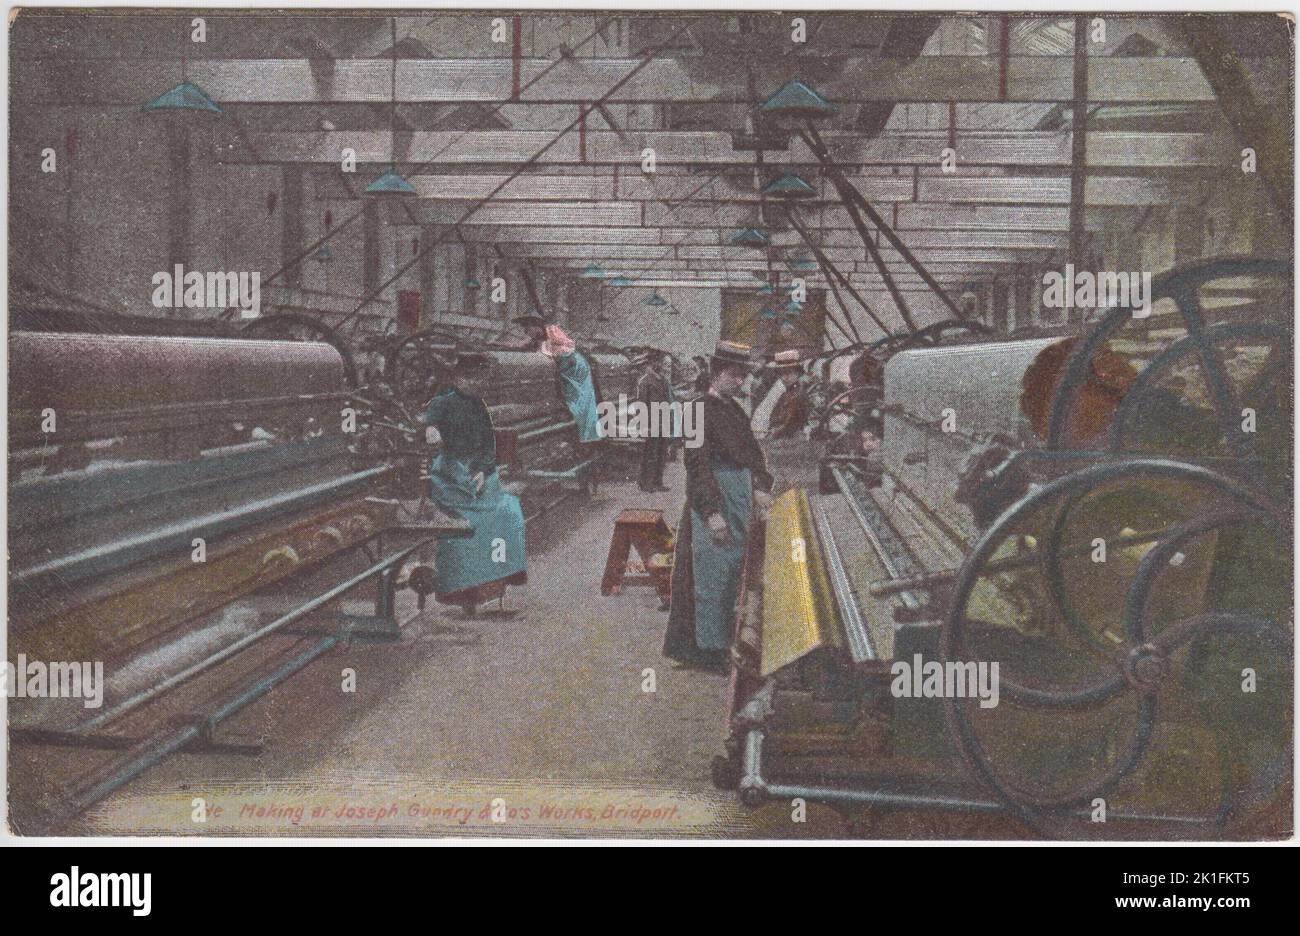 Net making at Joseph Gundry & Co.'s Works, Bridport, début du 20th siècle : carte postale montrant des travailleuses (toutes portant des tabliers et des chapeaux) travaillant sur de grandes machines dans une usine de fabrication de corde et de filet Dorset Banque D'Images